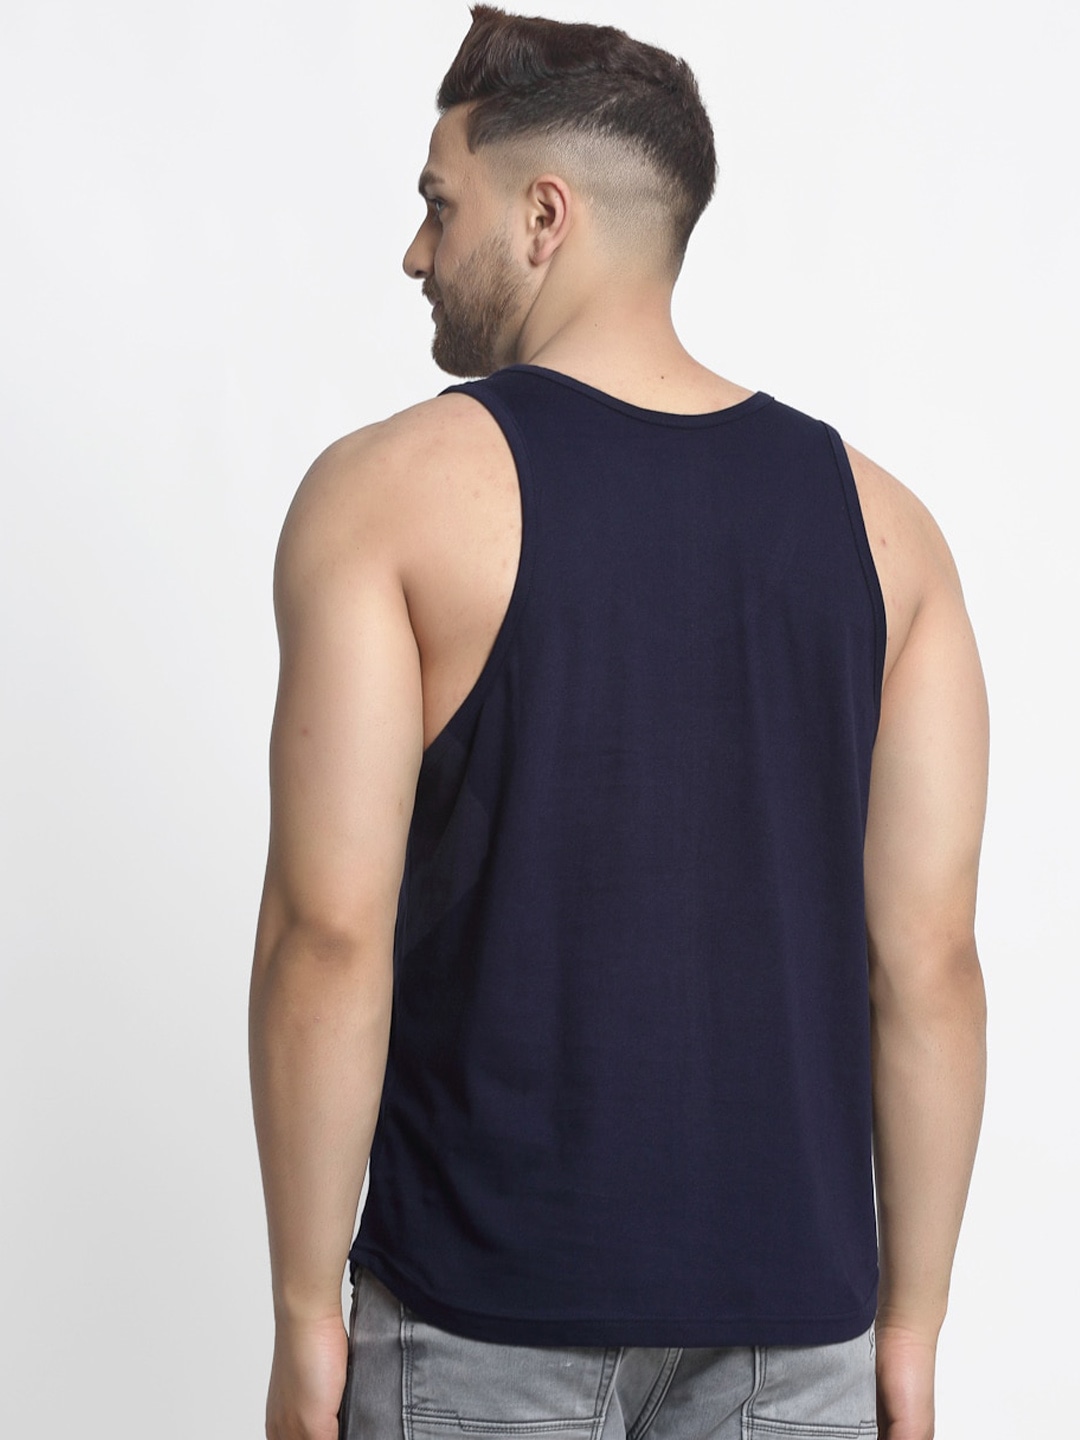 Clothing Innerwear Vests | Friskers Men Pack Of 2 Solid Gym Vests - SU57938